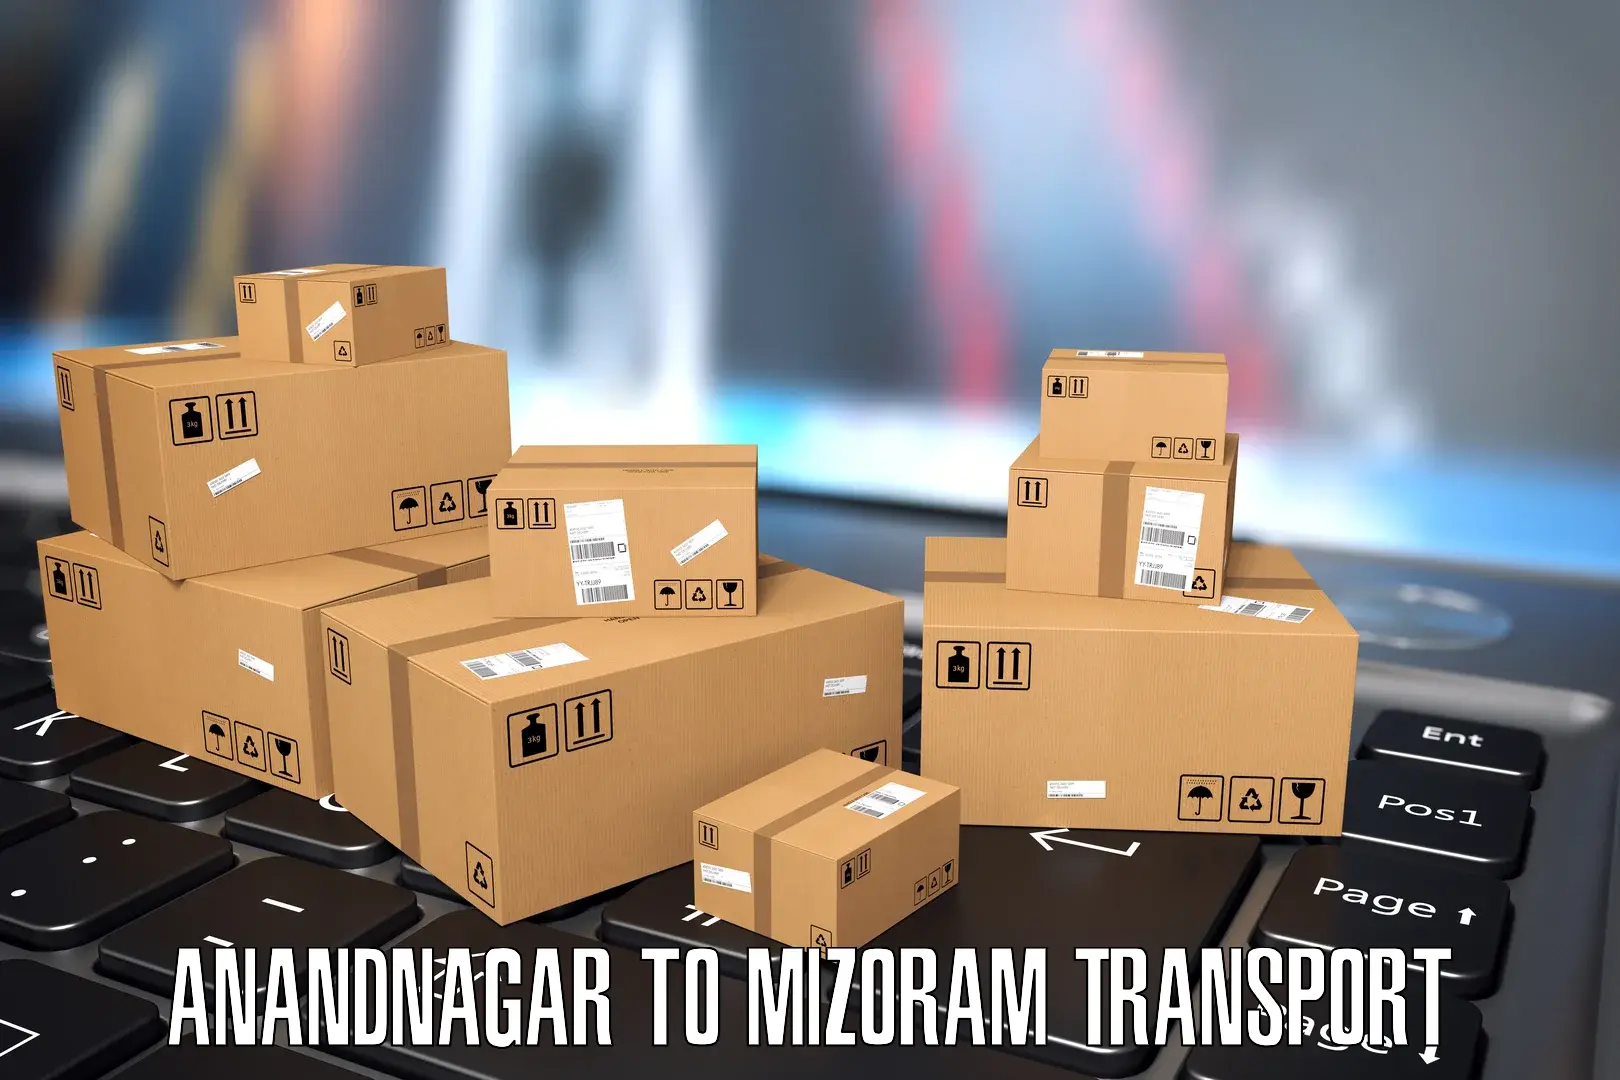 Online transport service Anandnagar to Thenzawl